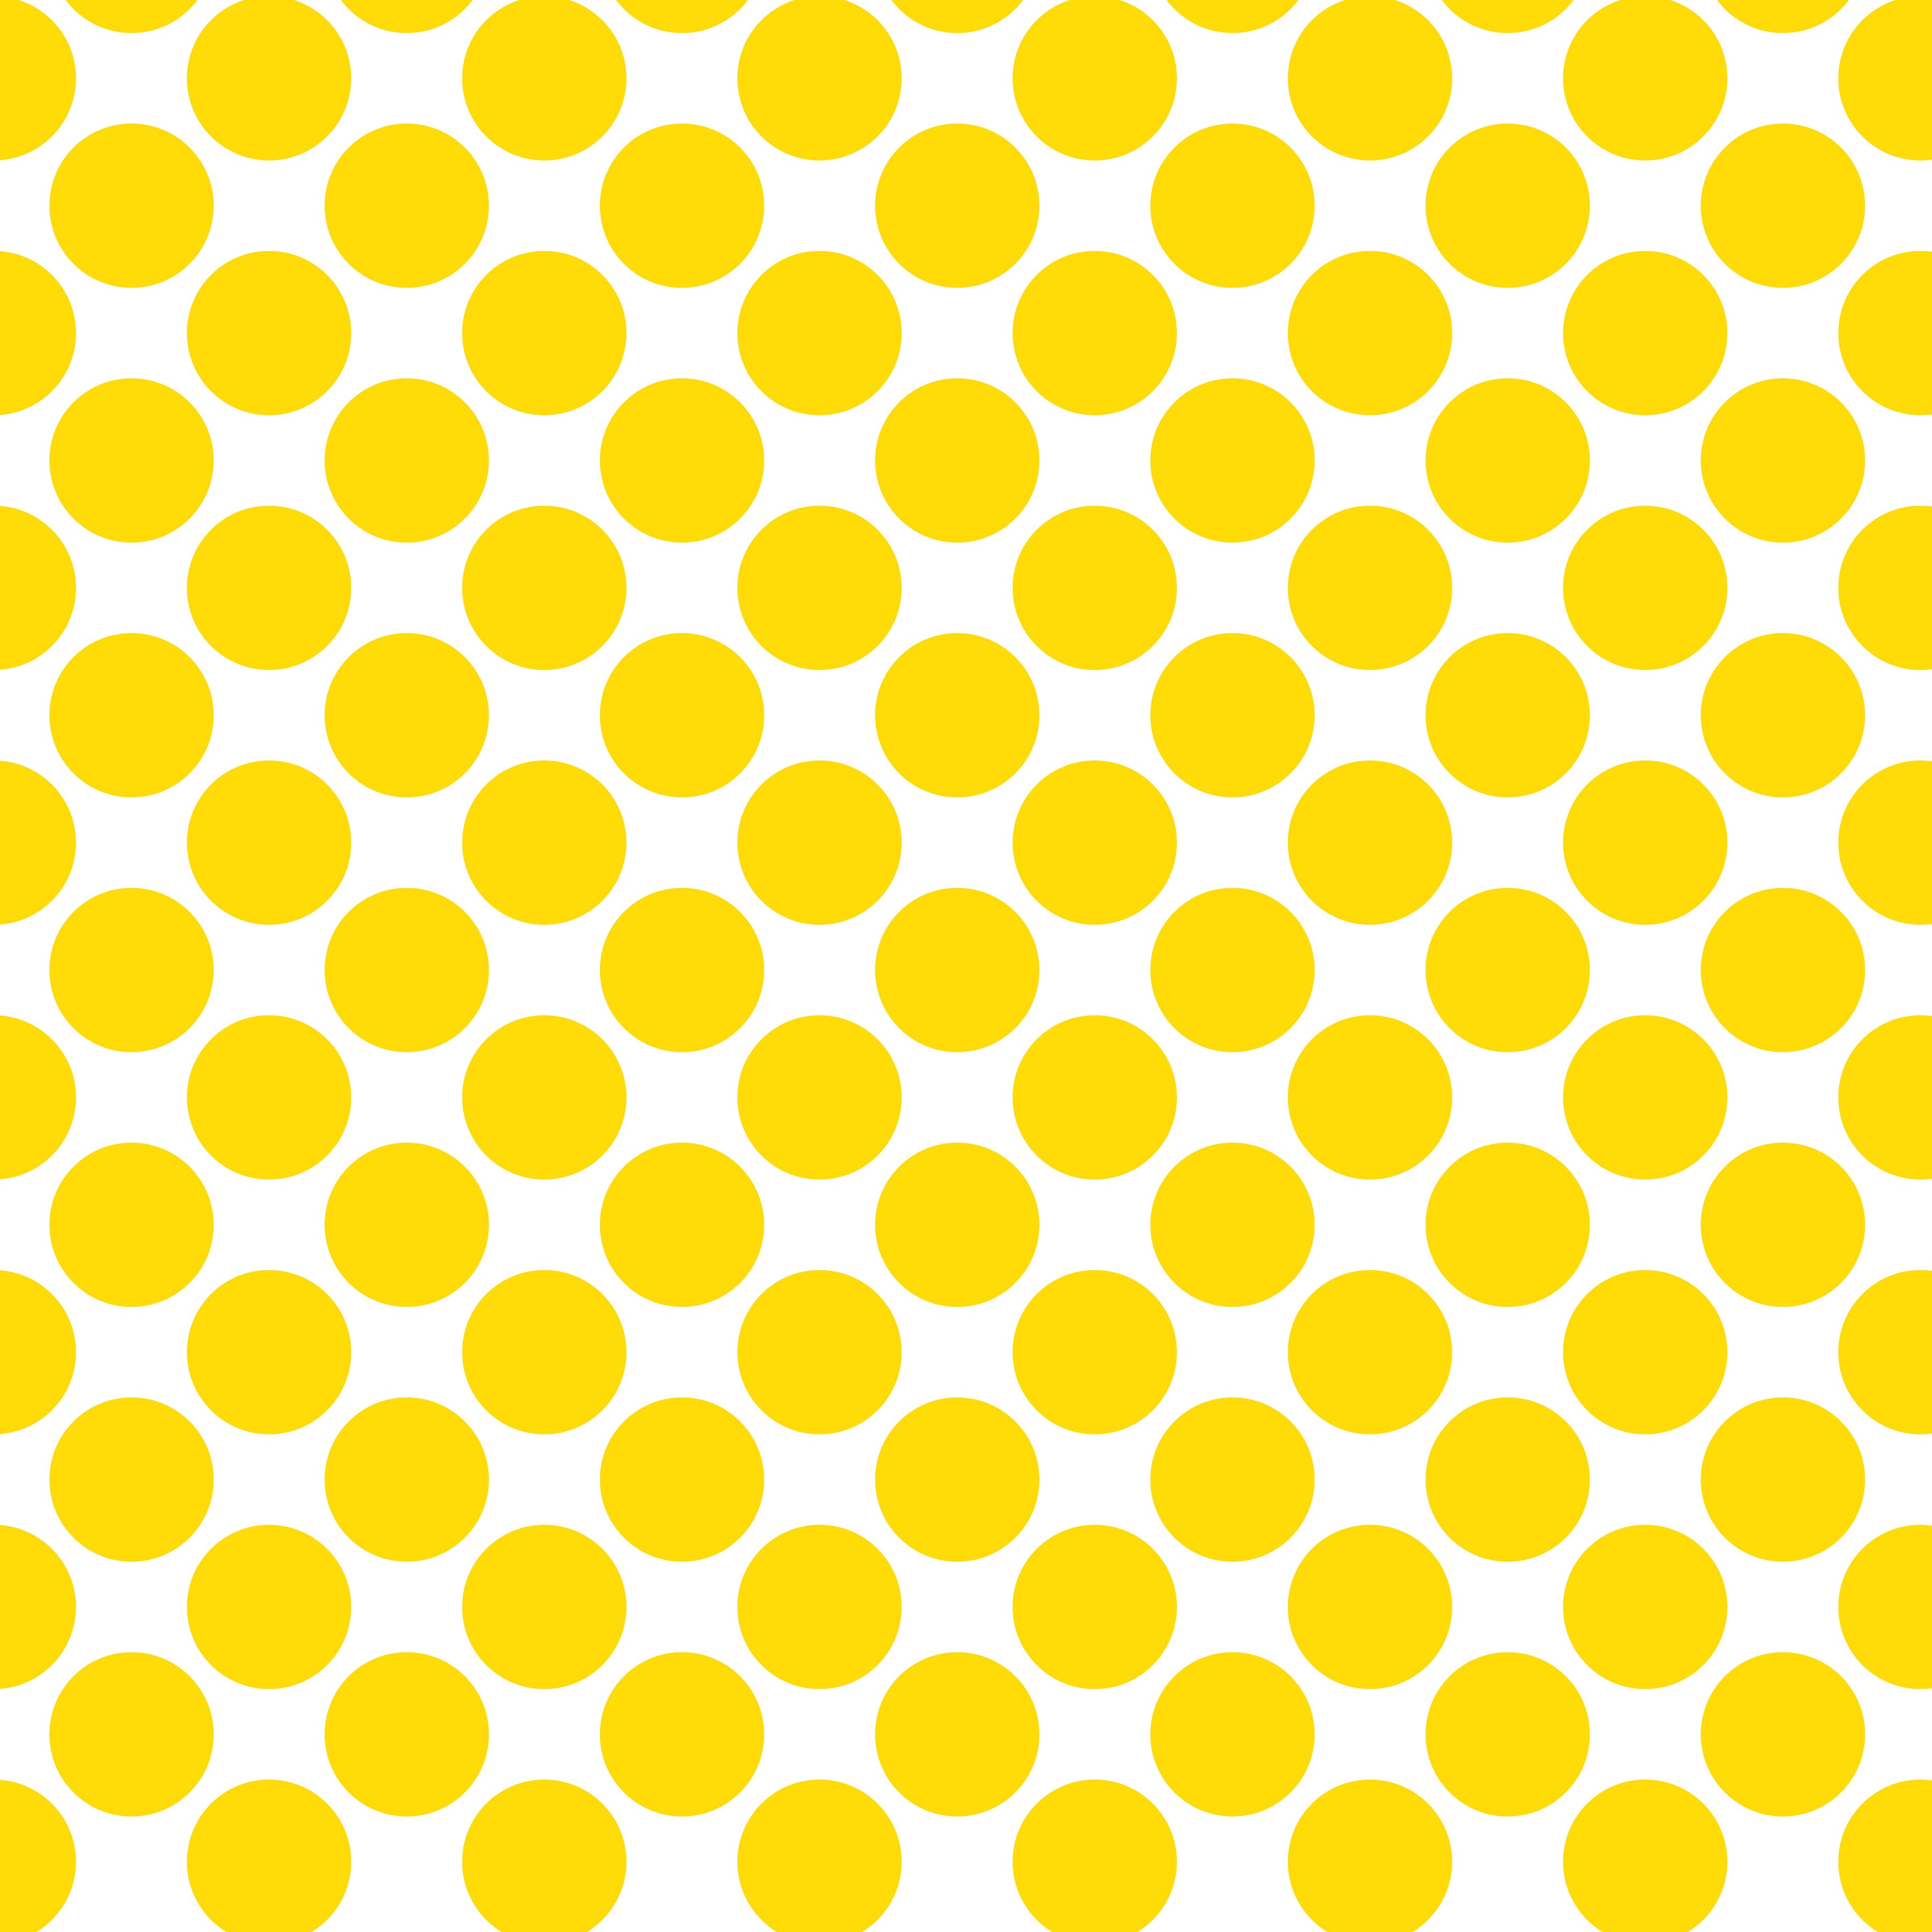 Polka Dot 1 cm Beyaz - Limoni Sarı Puantiye Dekoratif Baskı Kumaş